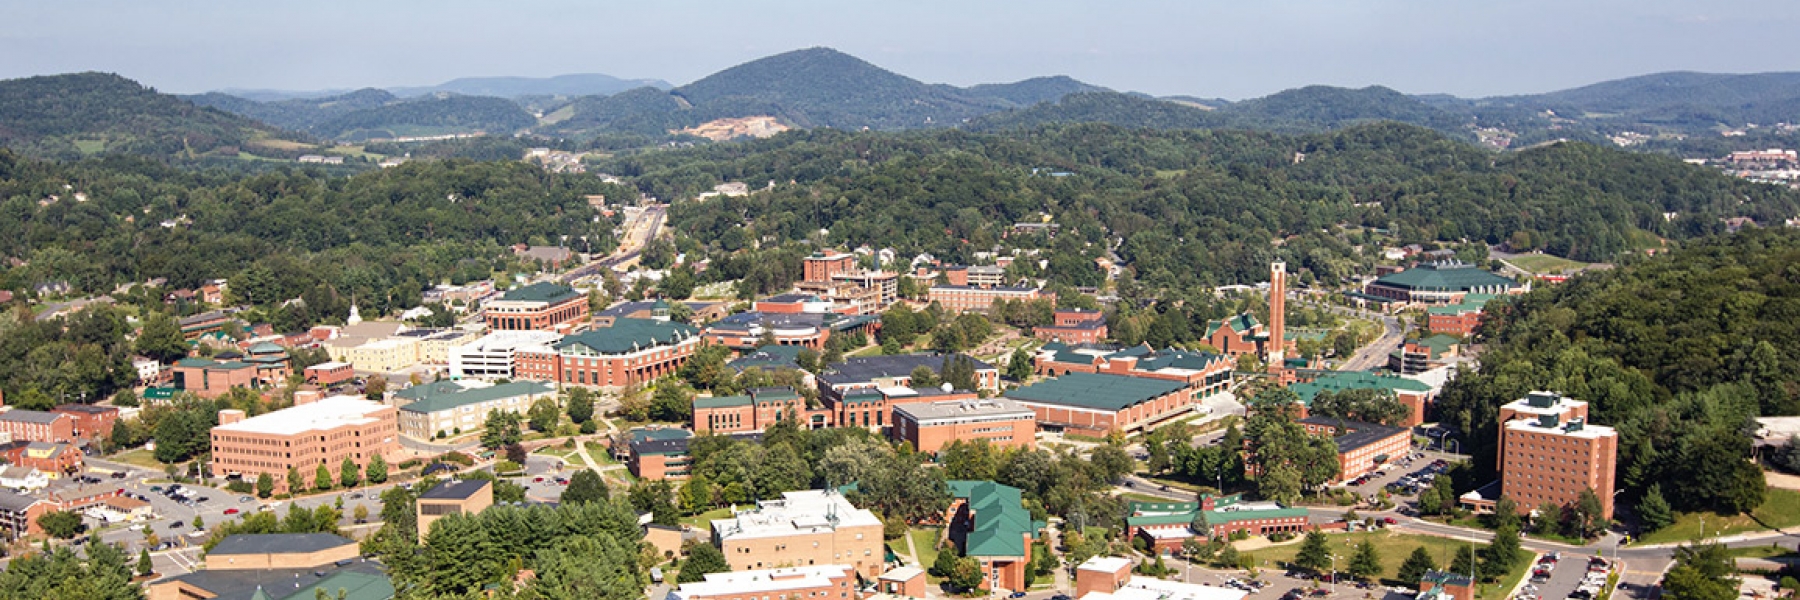 Aerial view of ASU Campus